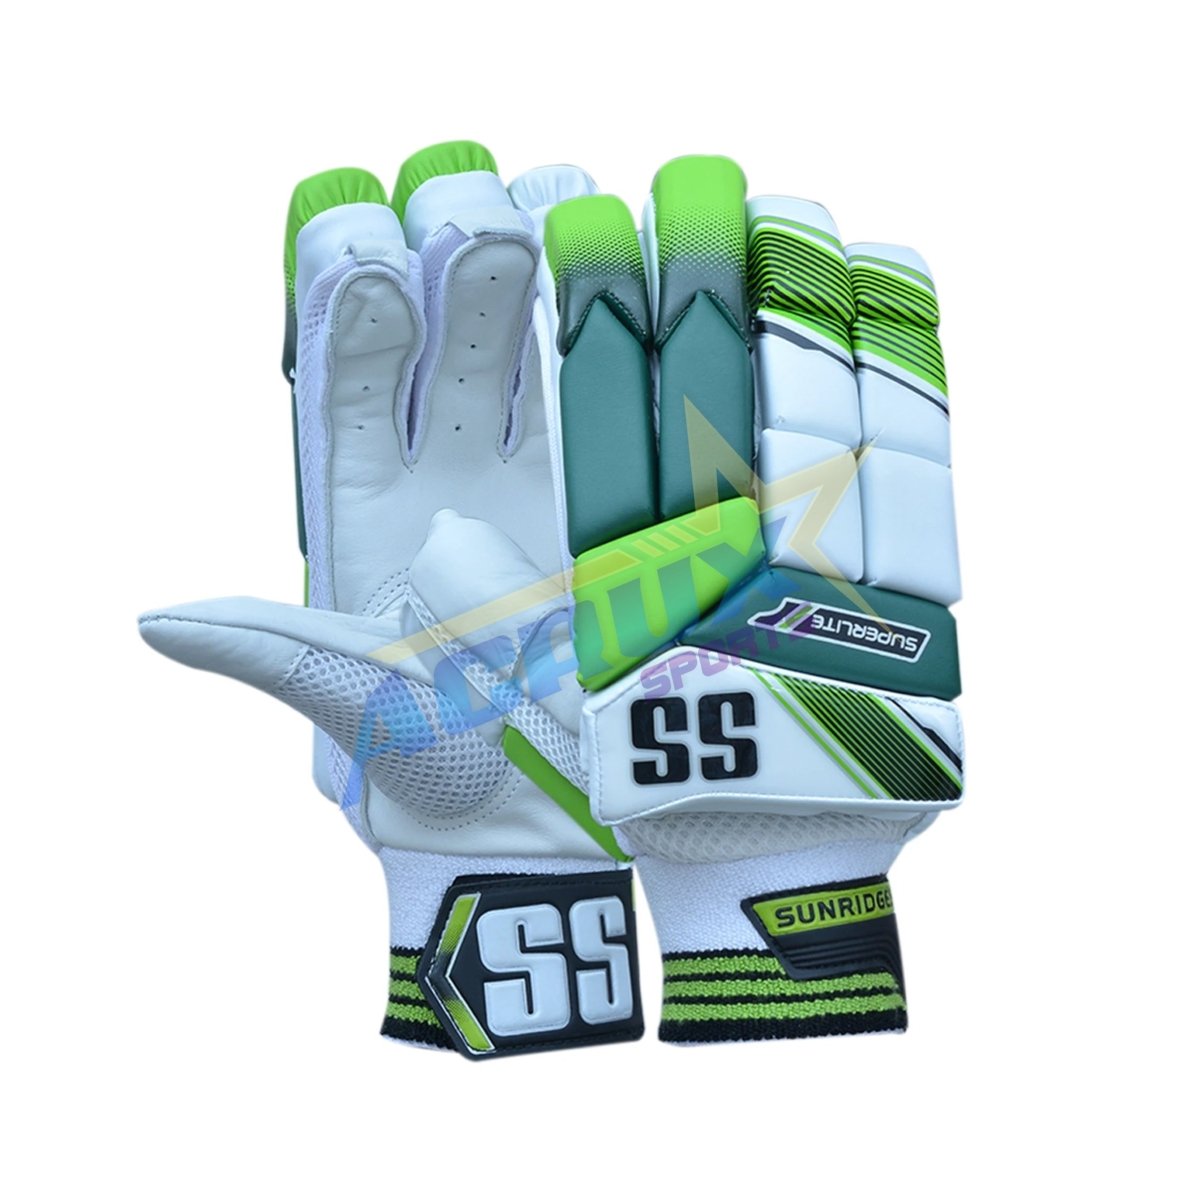 SS Superlite Junior Cricket Batting Gloves.